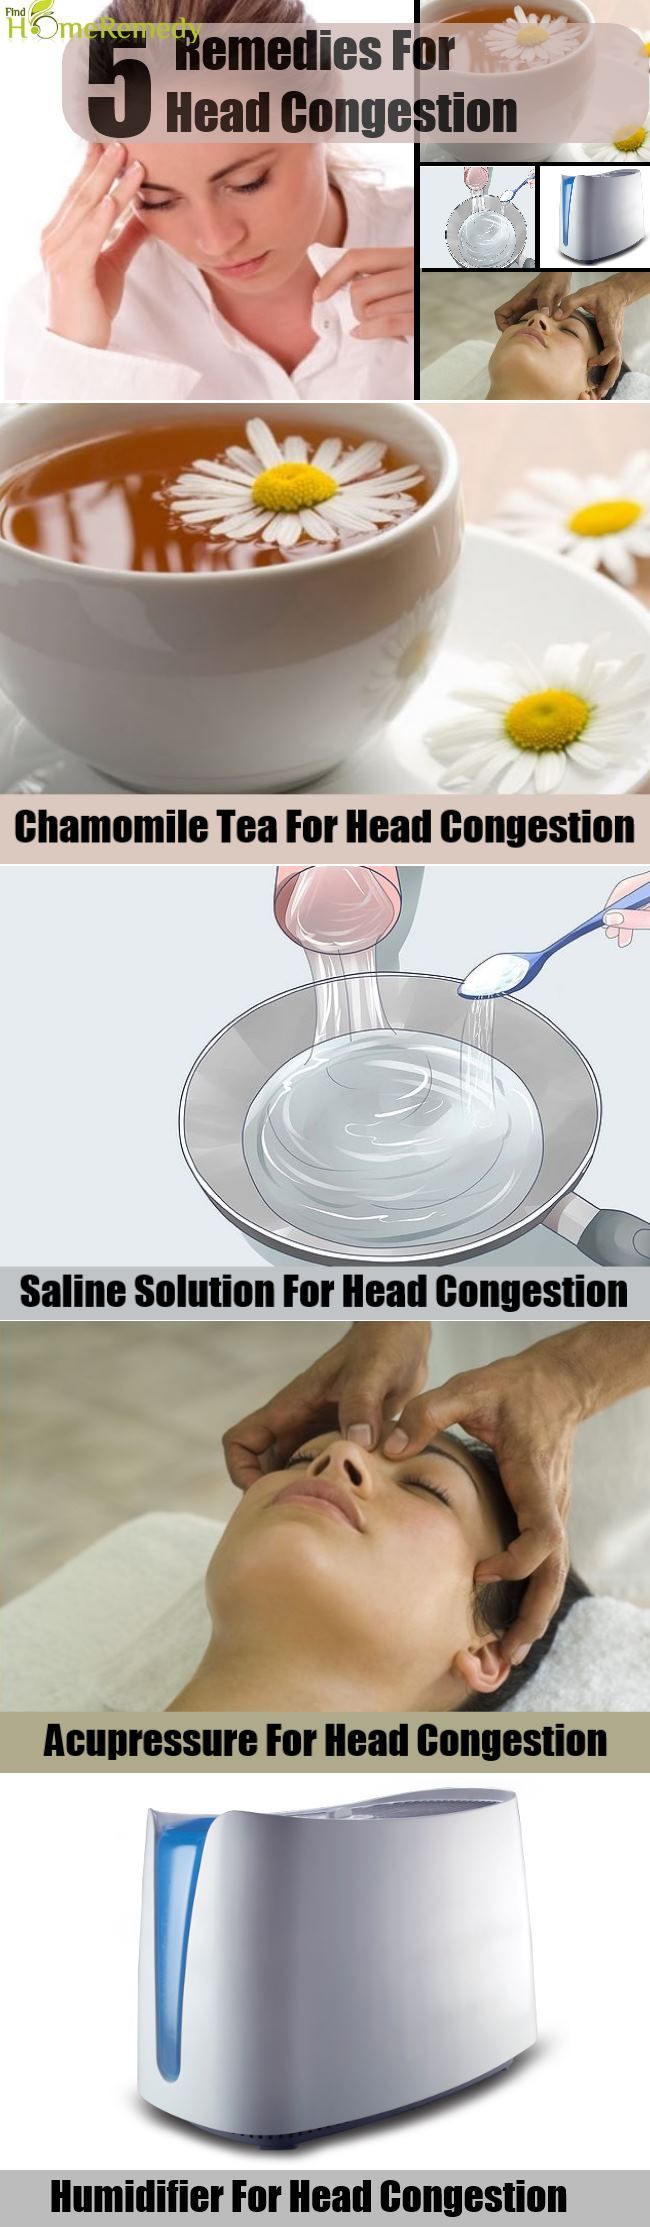 5 remèdes pour la congestion Head